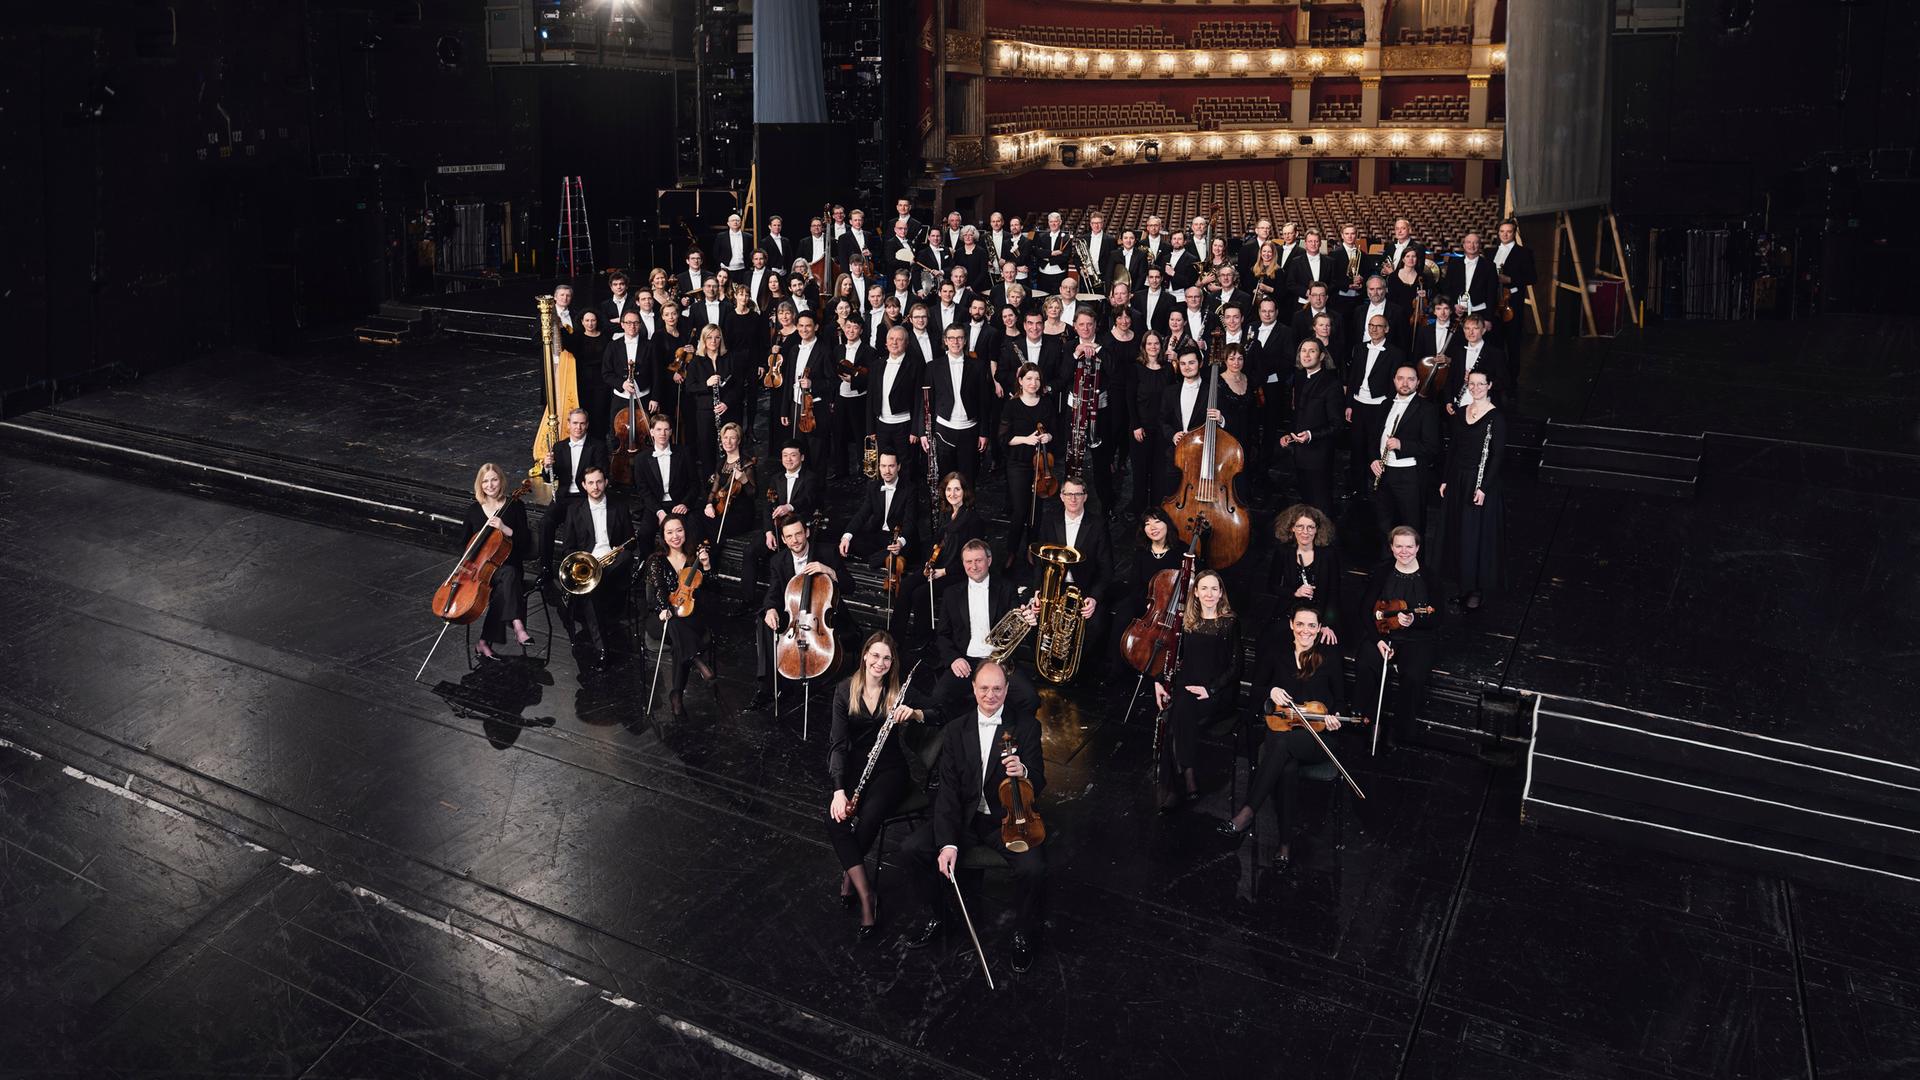 Orchestermitglieder stehen mit ihren Instrumenten auf einer schwarzen Opernbühne. Im Hintergrund ist ein feierlich erleuchteter, leerer Saal zu sehen.